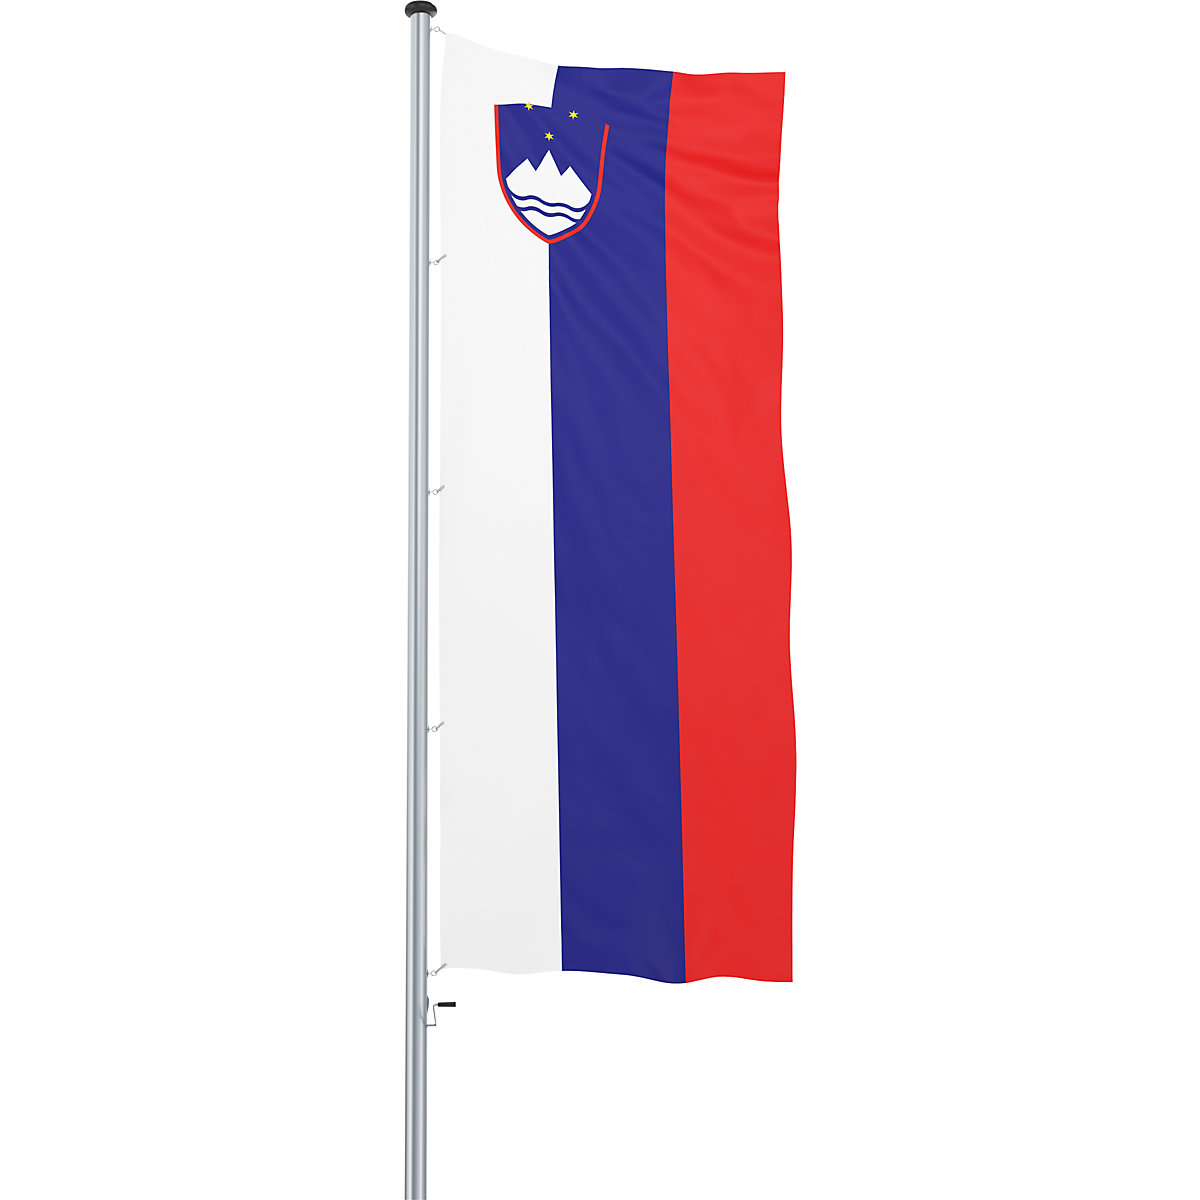 Mannus – Bandera para izar/bandera del país (Imagen del producto 38)